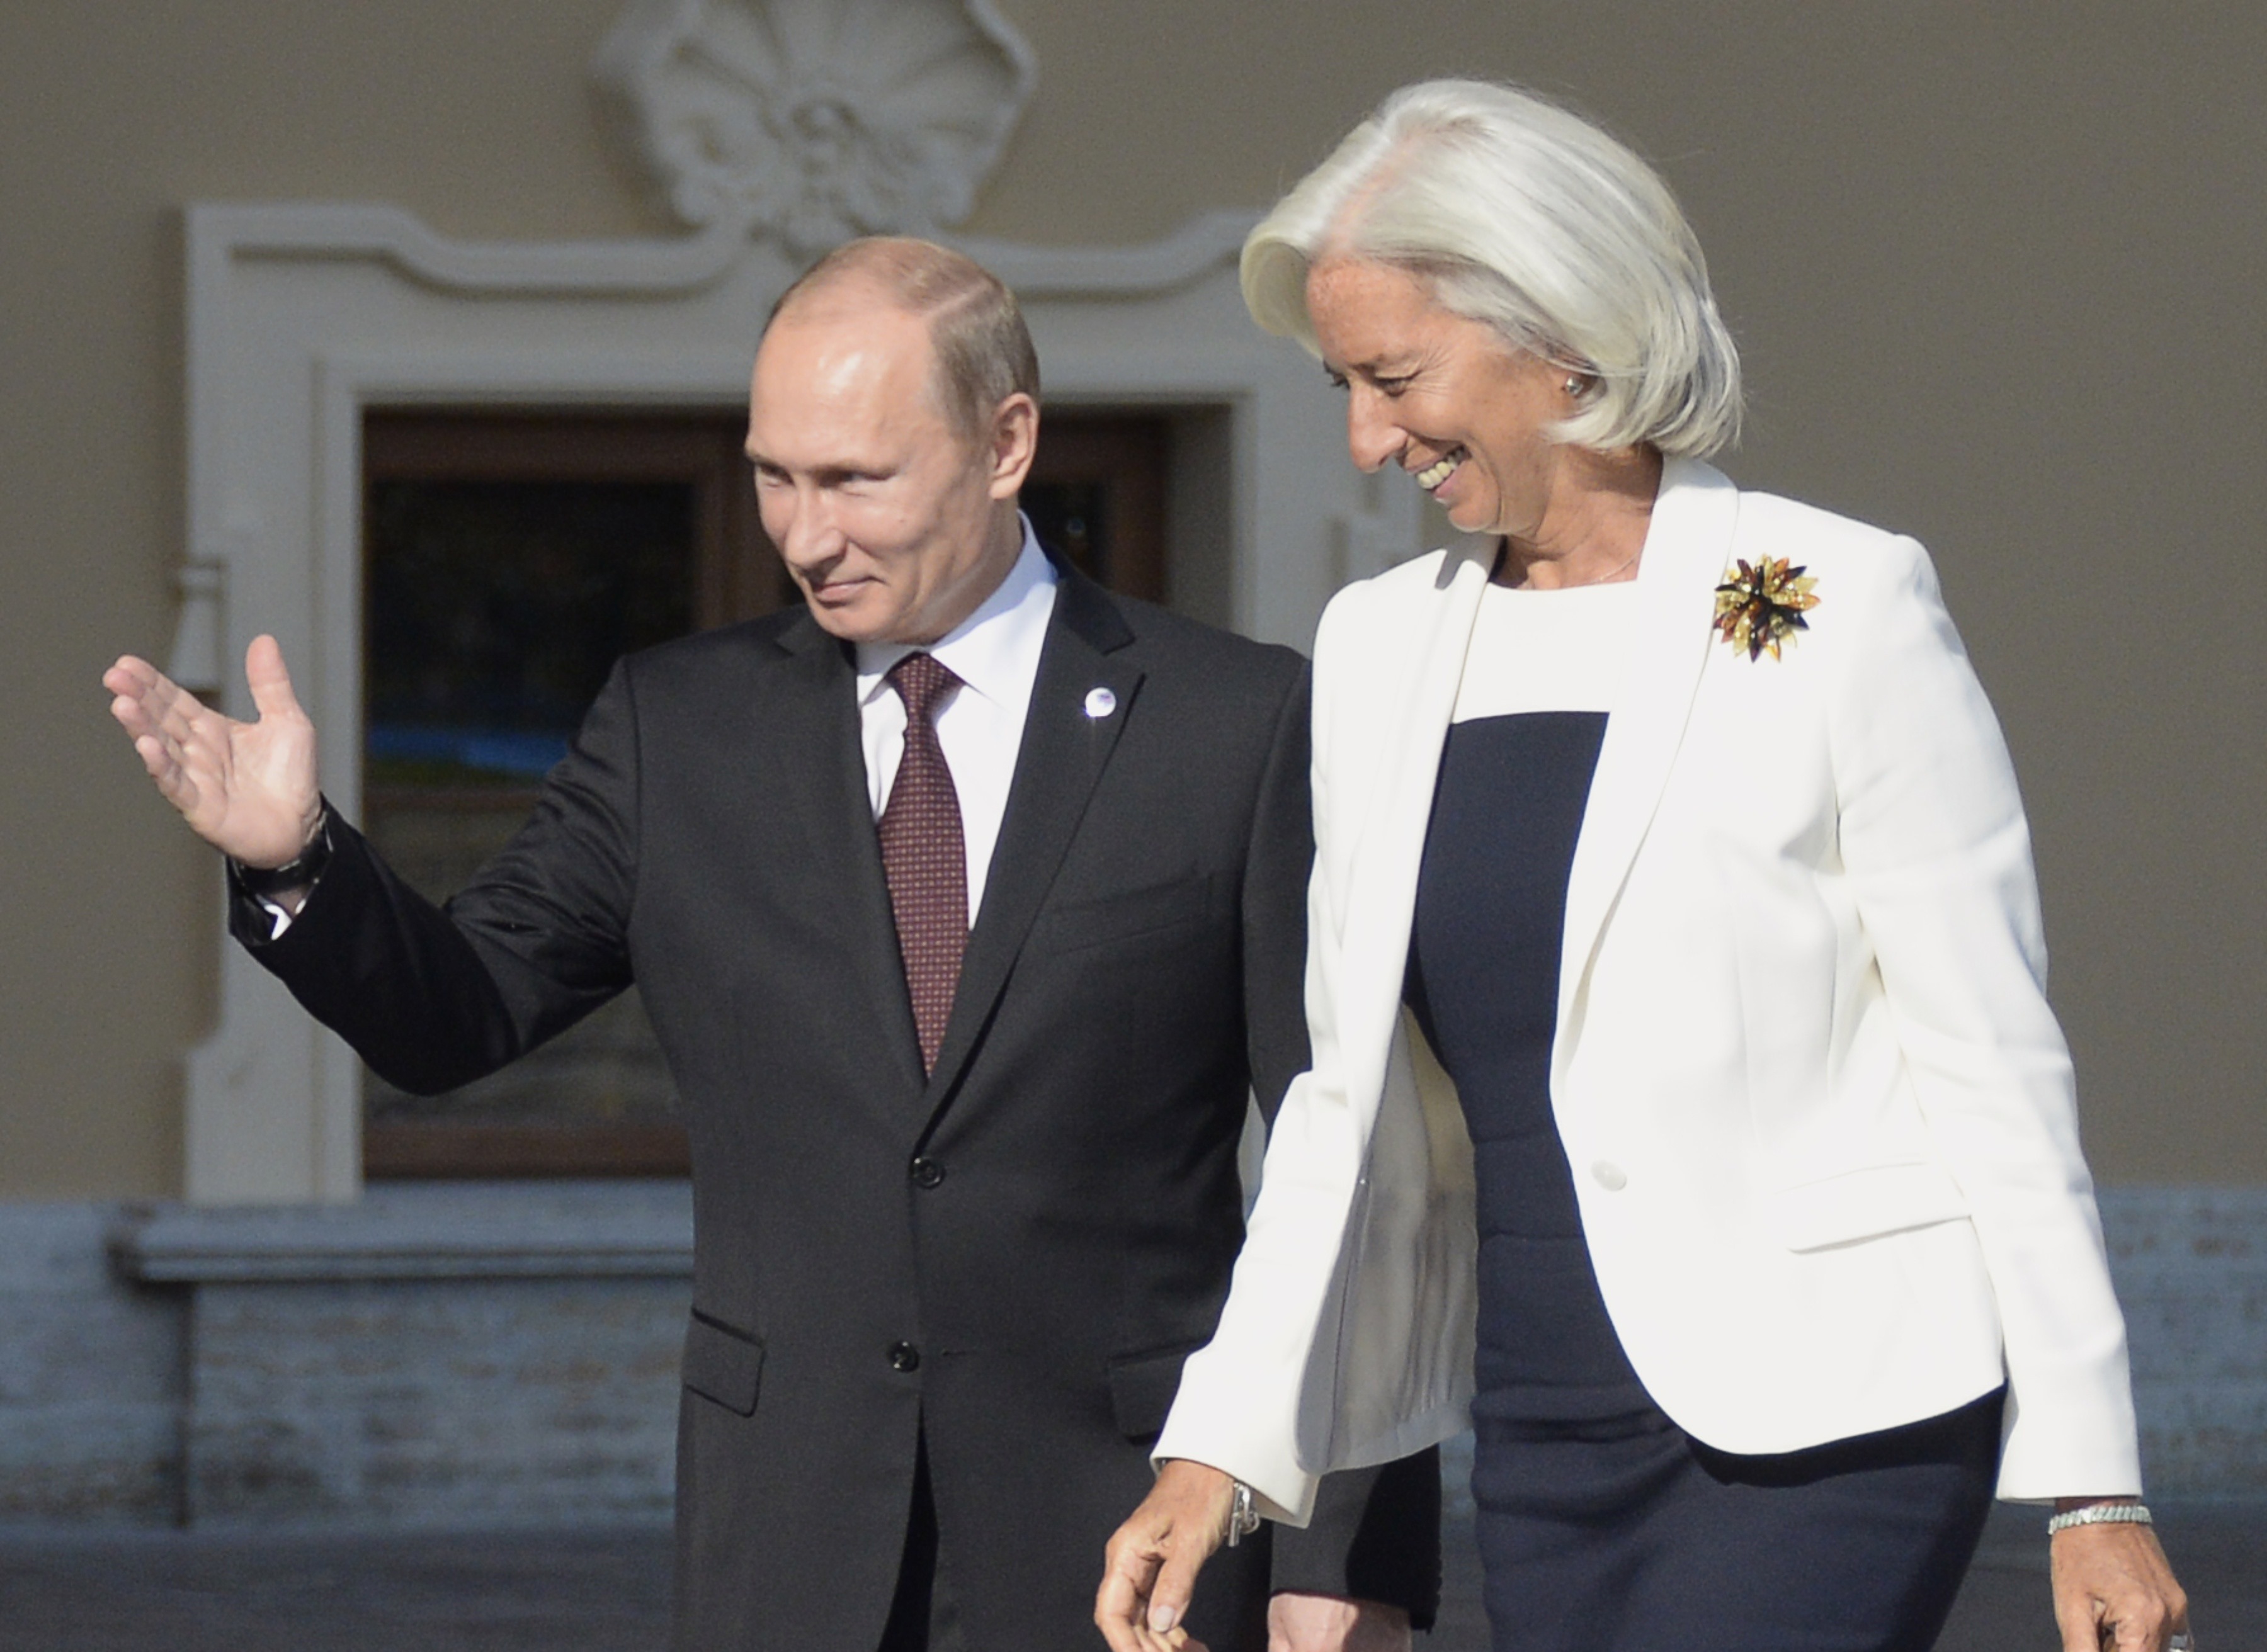 2013年9月プーチン大統領の故郷サンクトペテルブルクで20ヶ国・地域（G20）首脳会議が開催され、クリスティーヌ・ラガルド国際通貨基金専務理事が案内される。